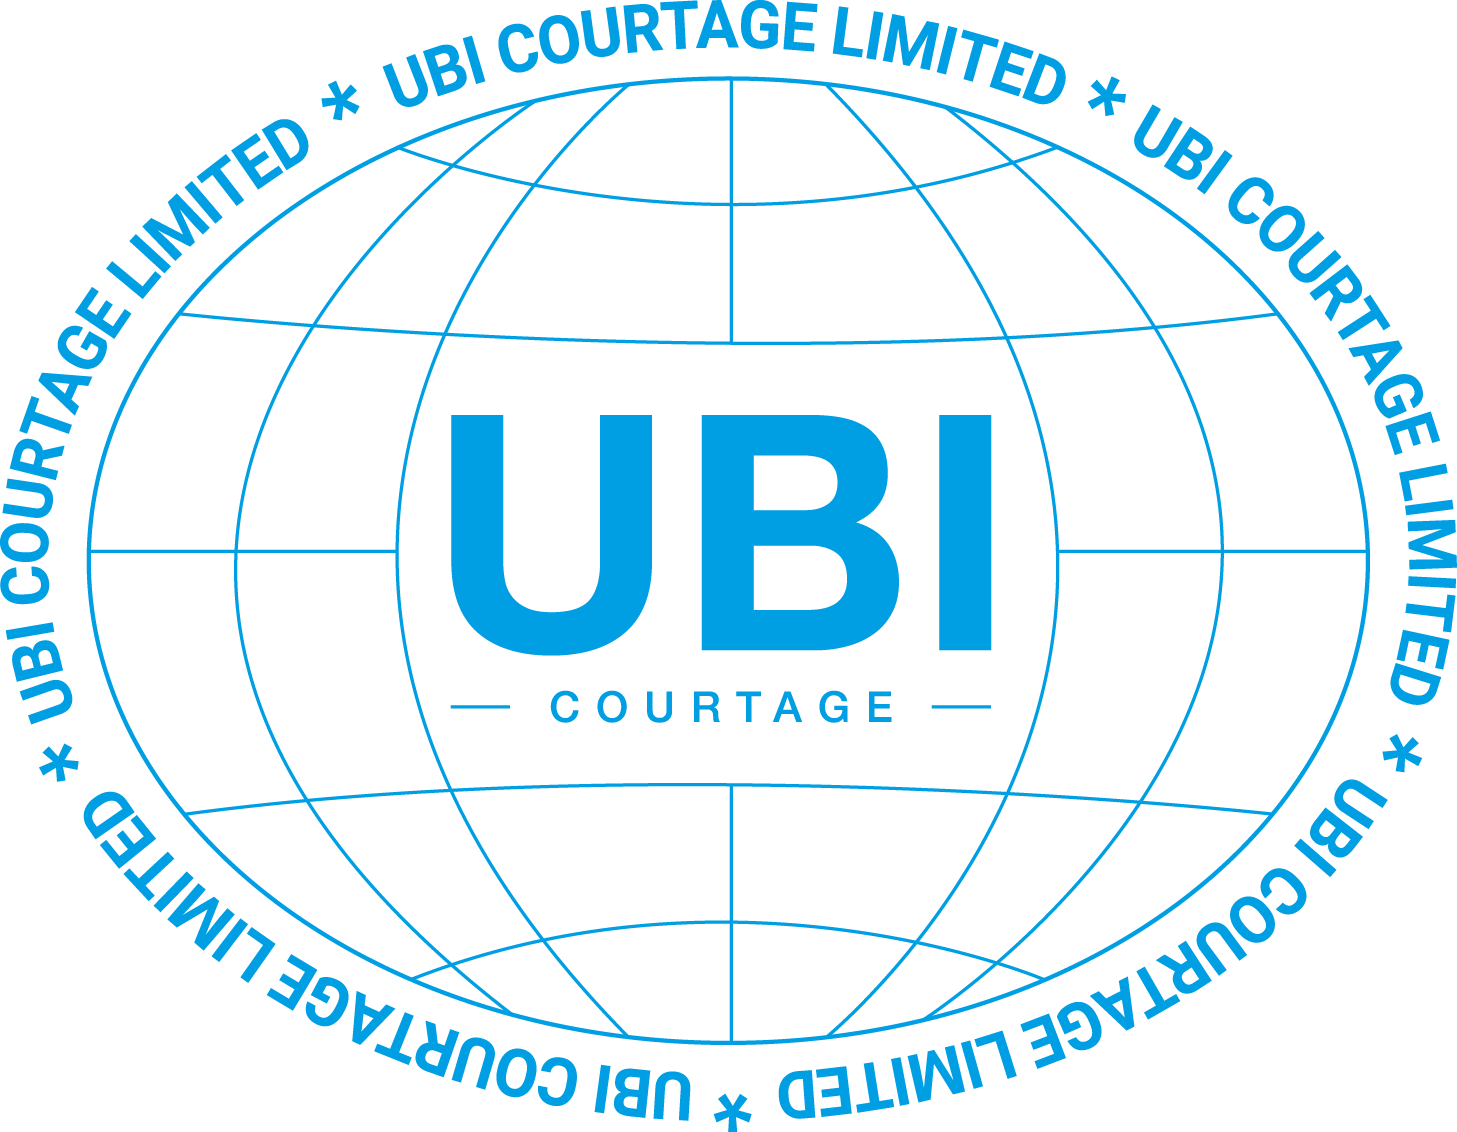 UBI courtage limited